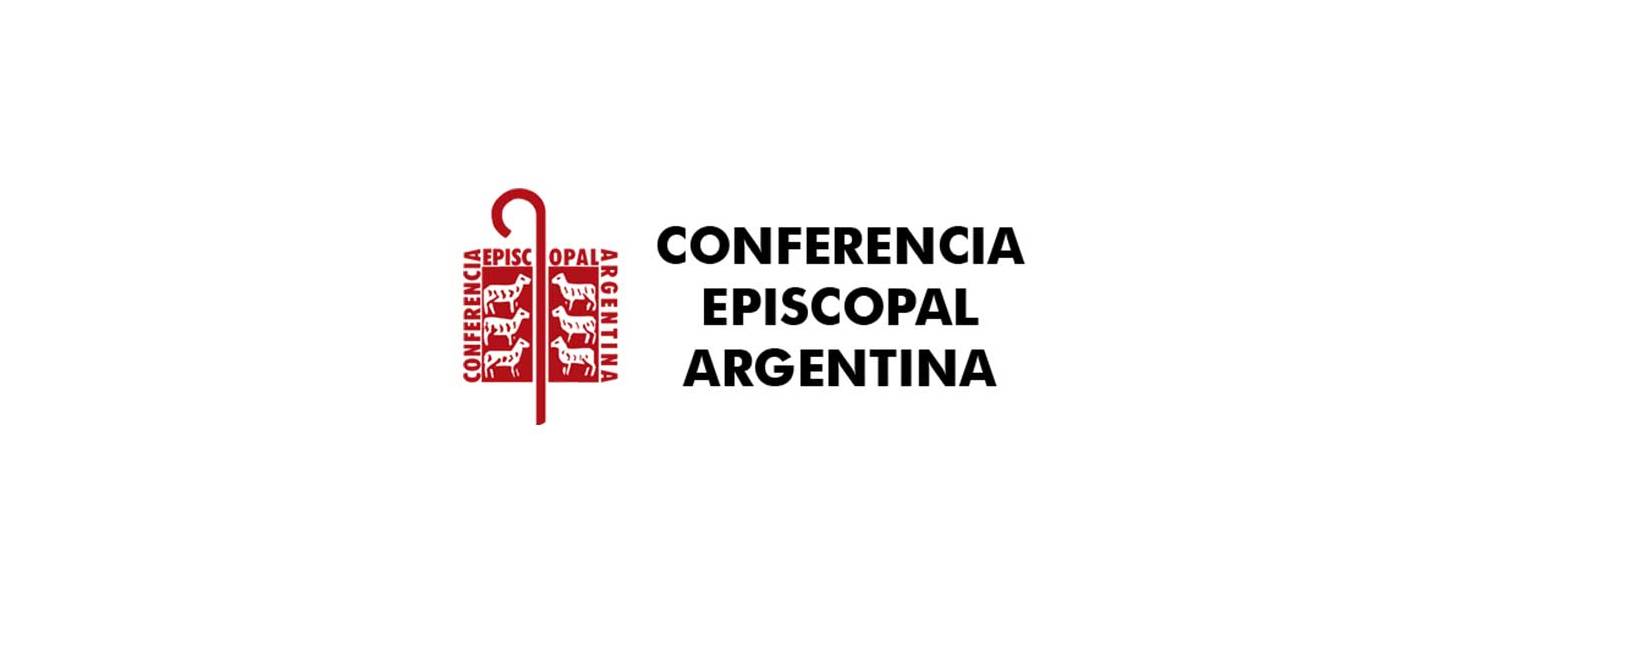 La Conferencia Episcopal Argentina se pronuncia sobre la condena a Mons. Zanchetta